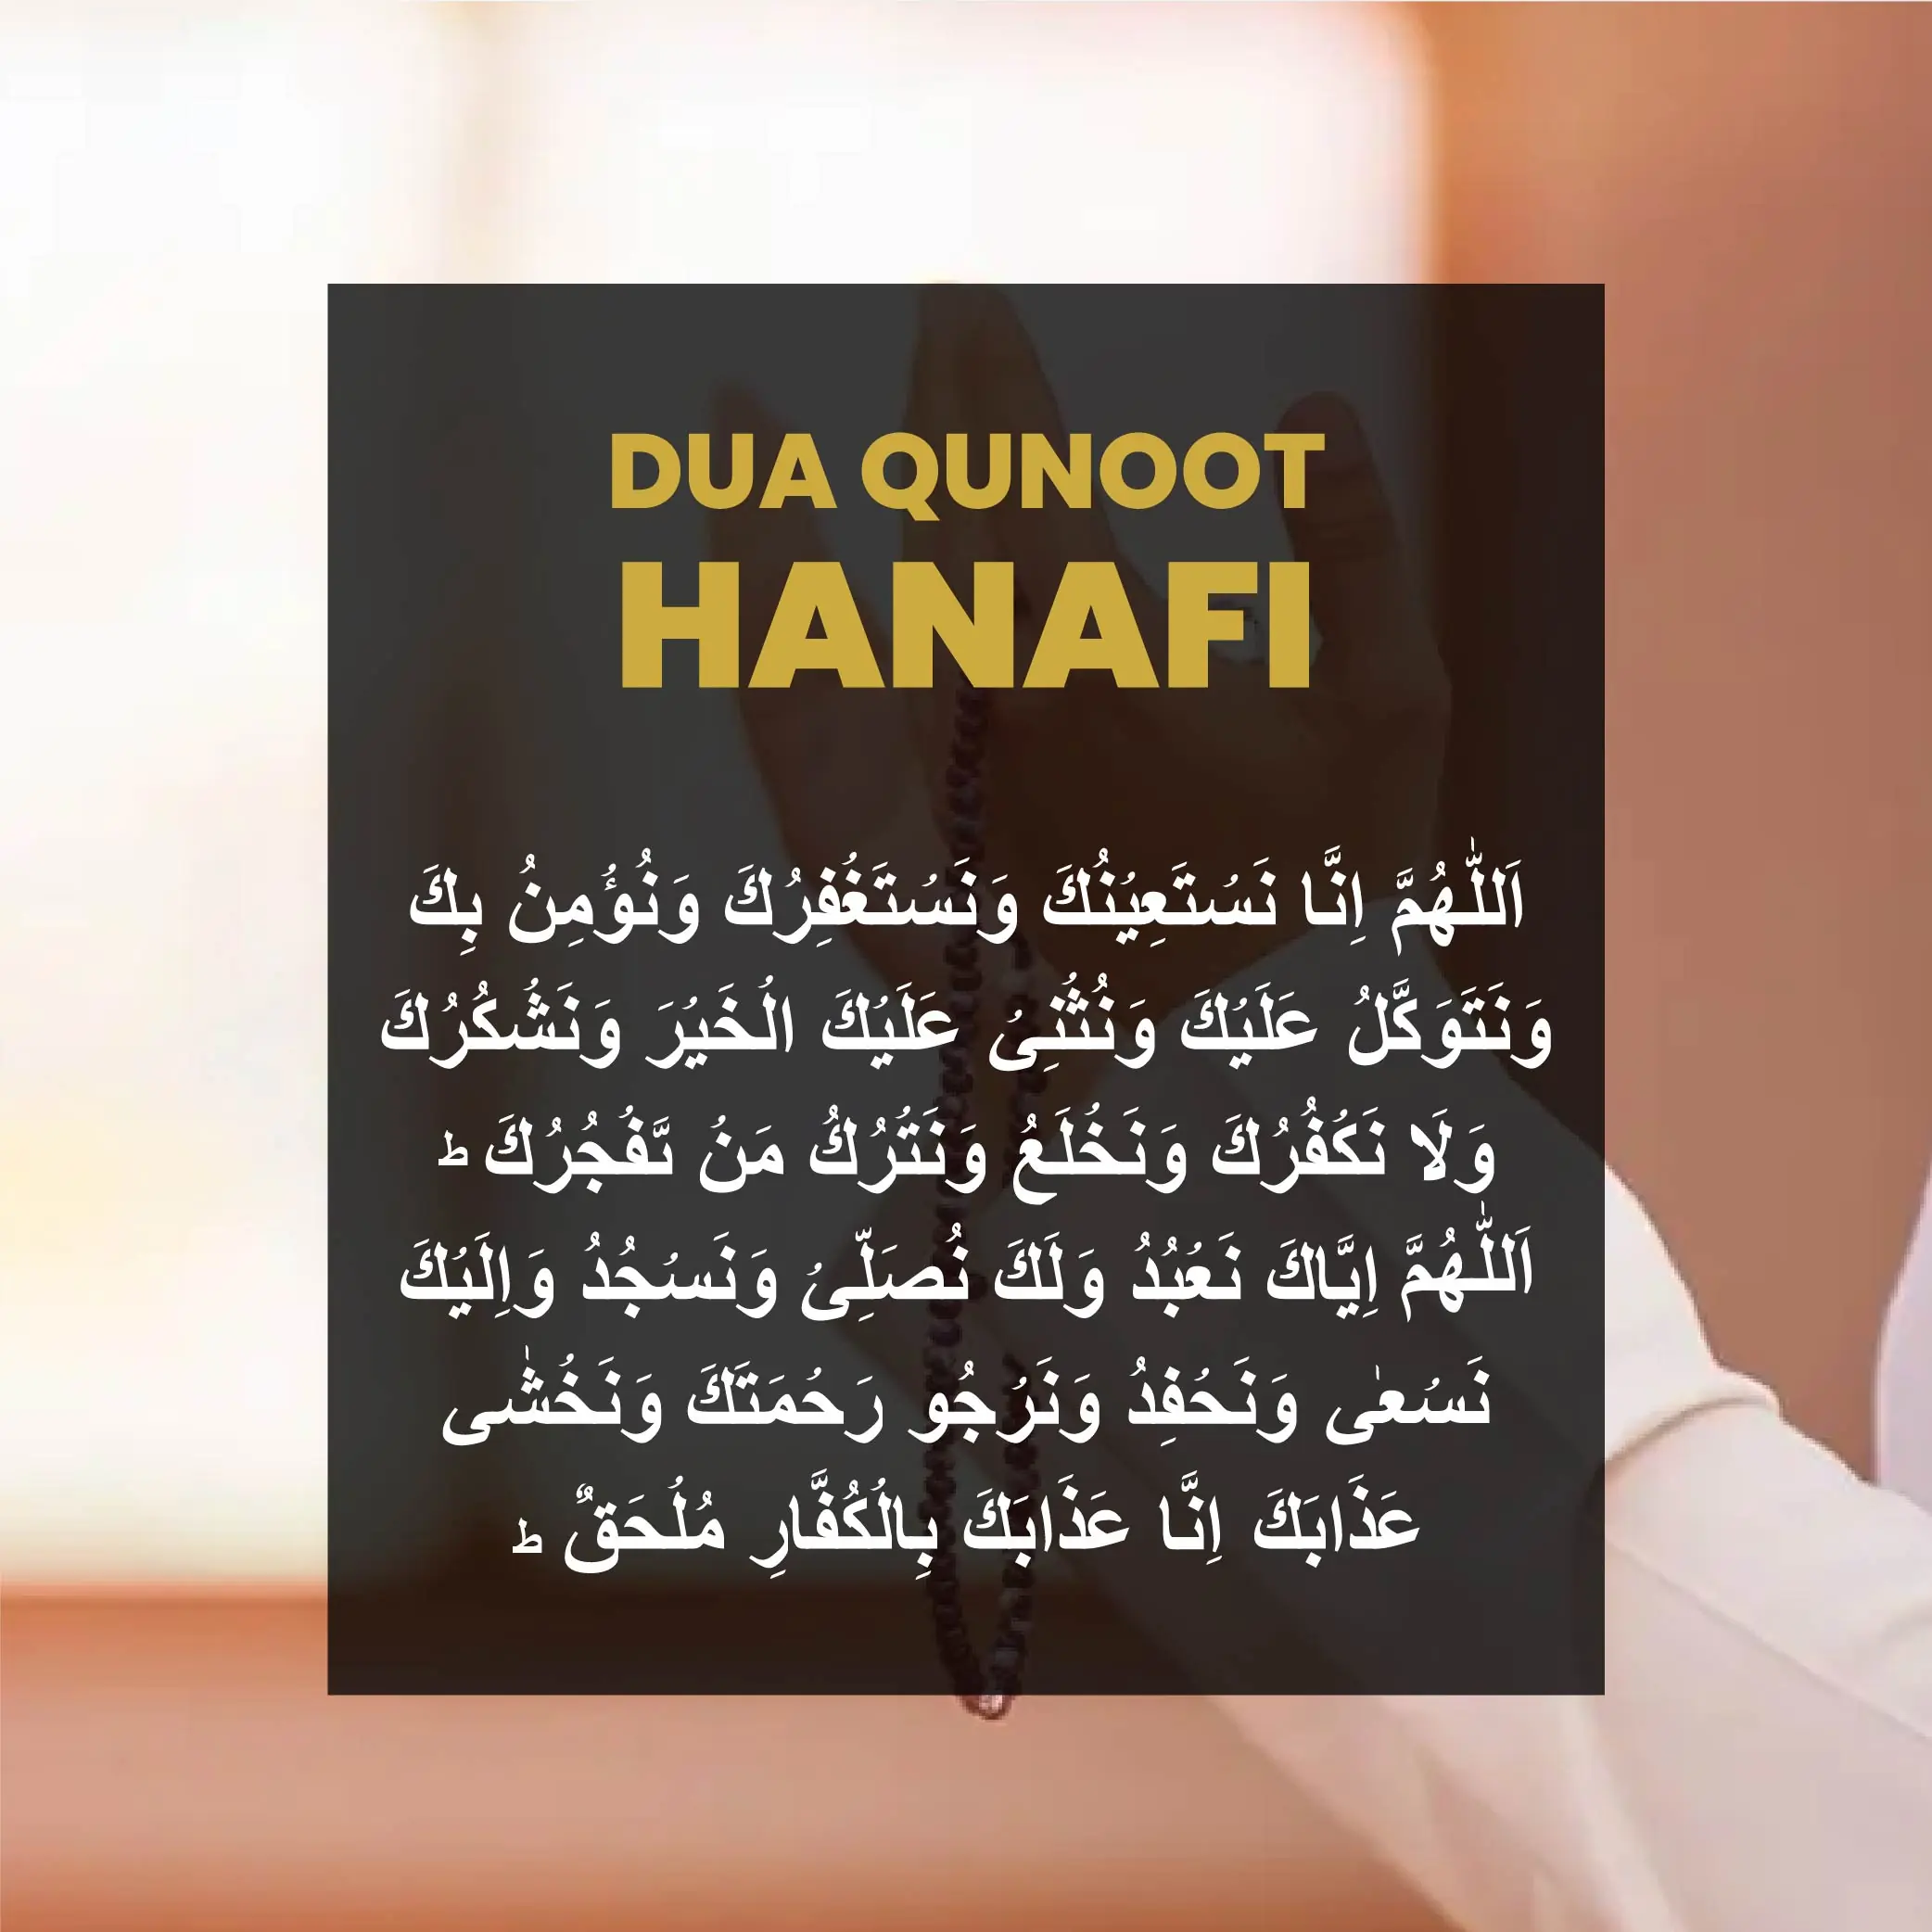 Dua e Qunoot hanfi